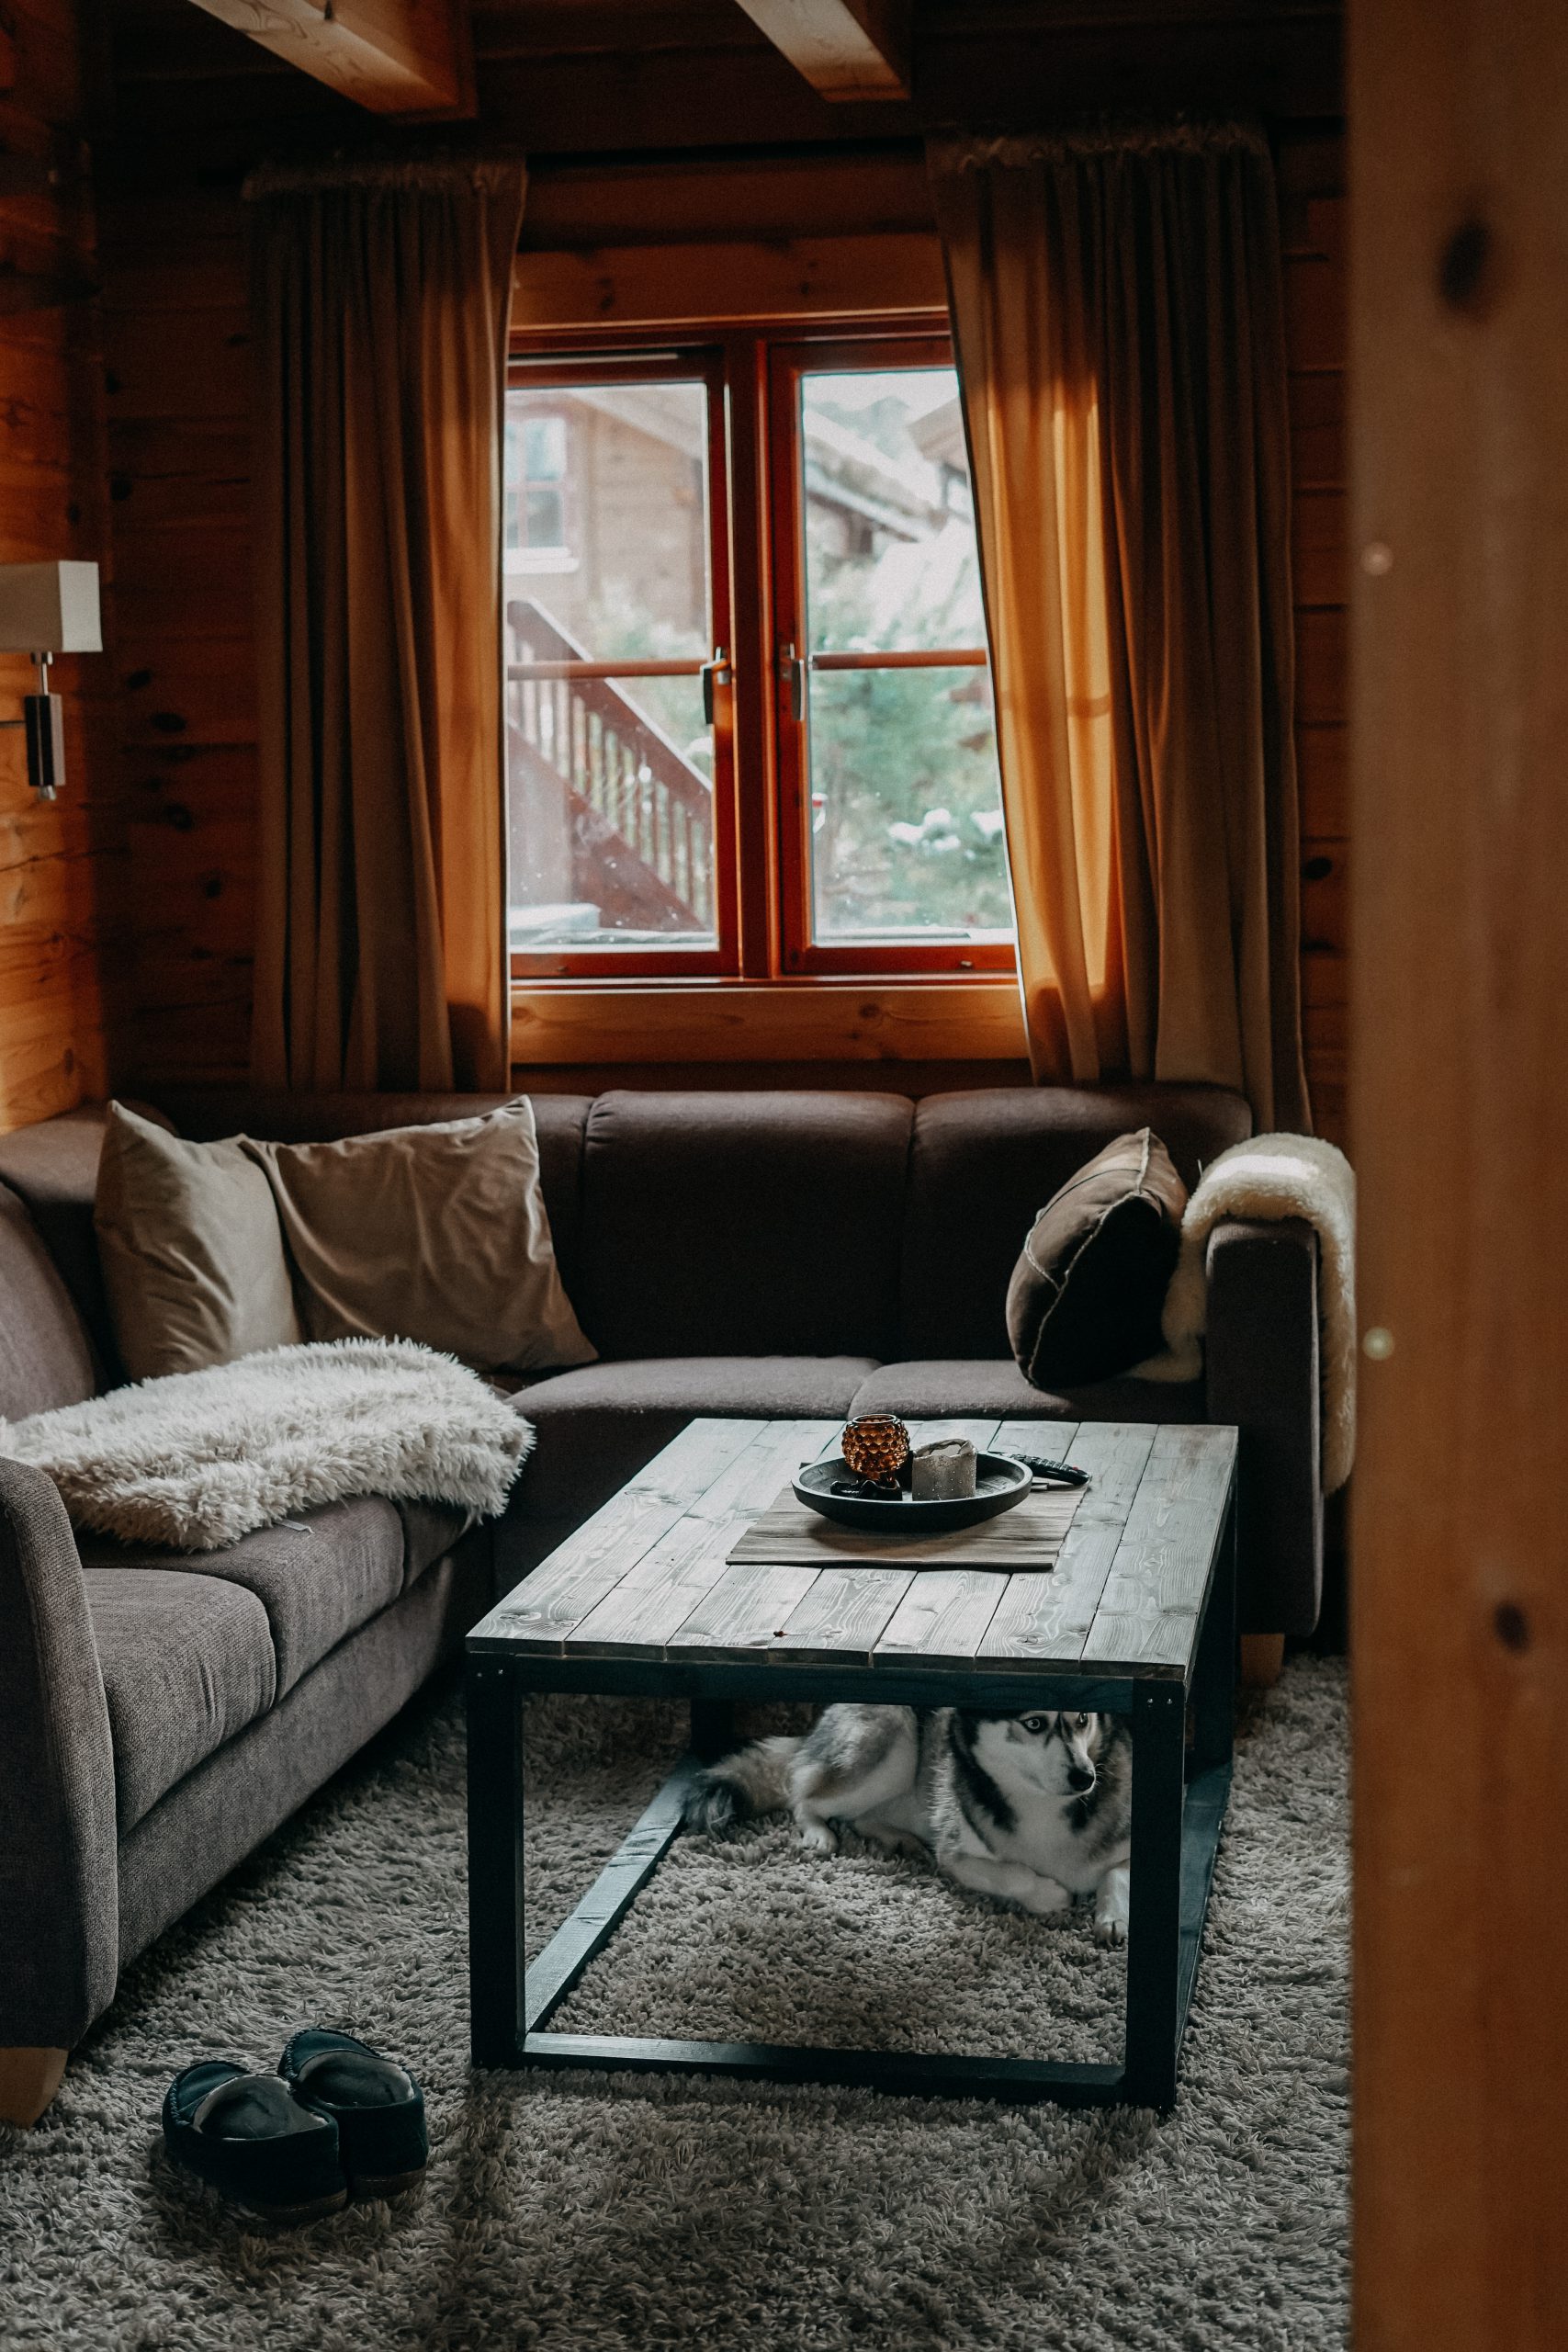 Airbnb Hütte Unterkunft Norwegen Telemark Holzhütte Norwegen Winterurlaub Winterroute Auto Reiseblog Reisen mit Hund Tipps